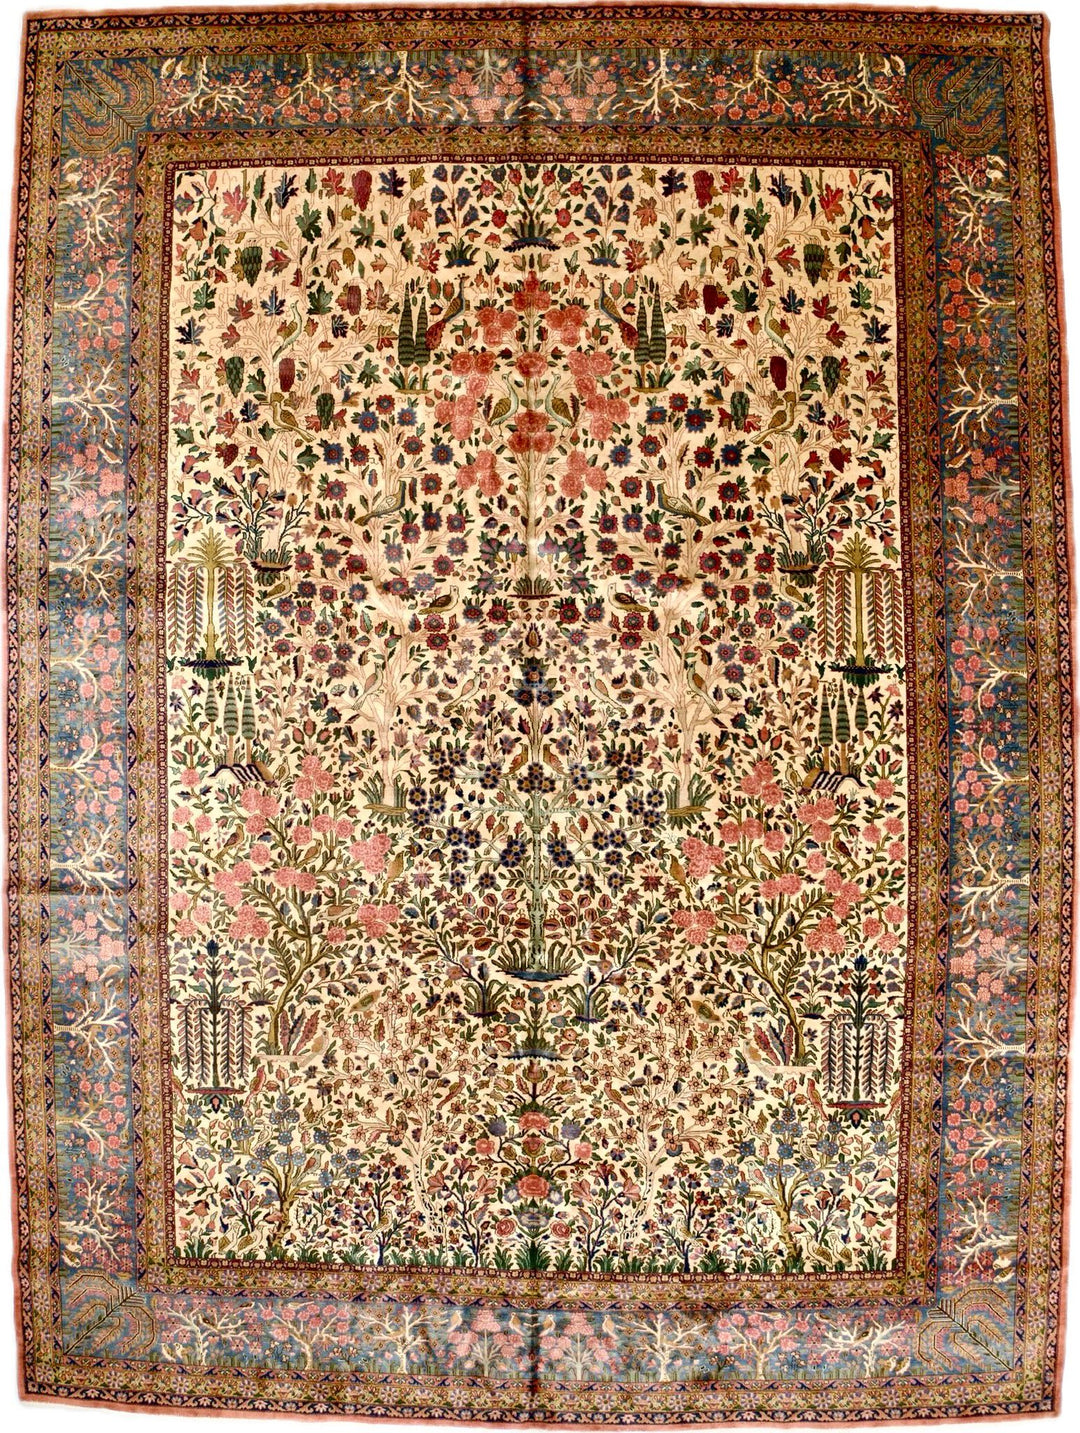 Antique Kashan Rug 11'2'' x 15'1''